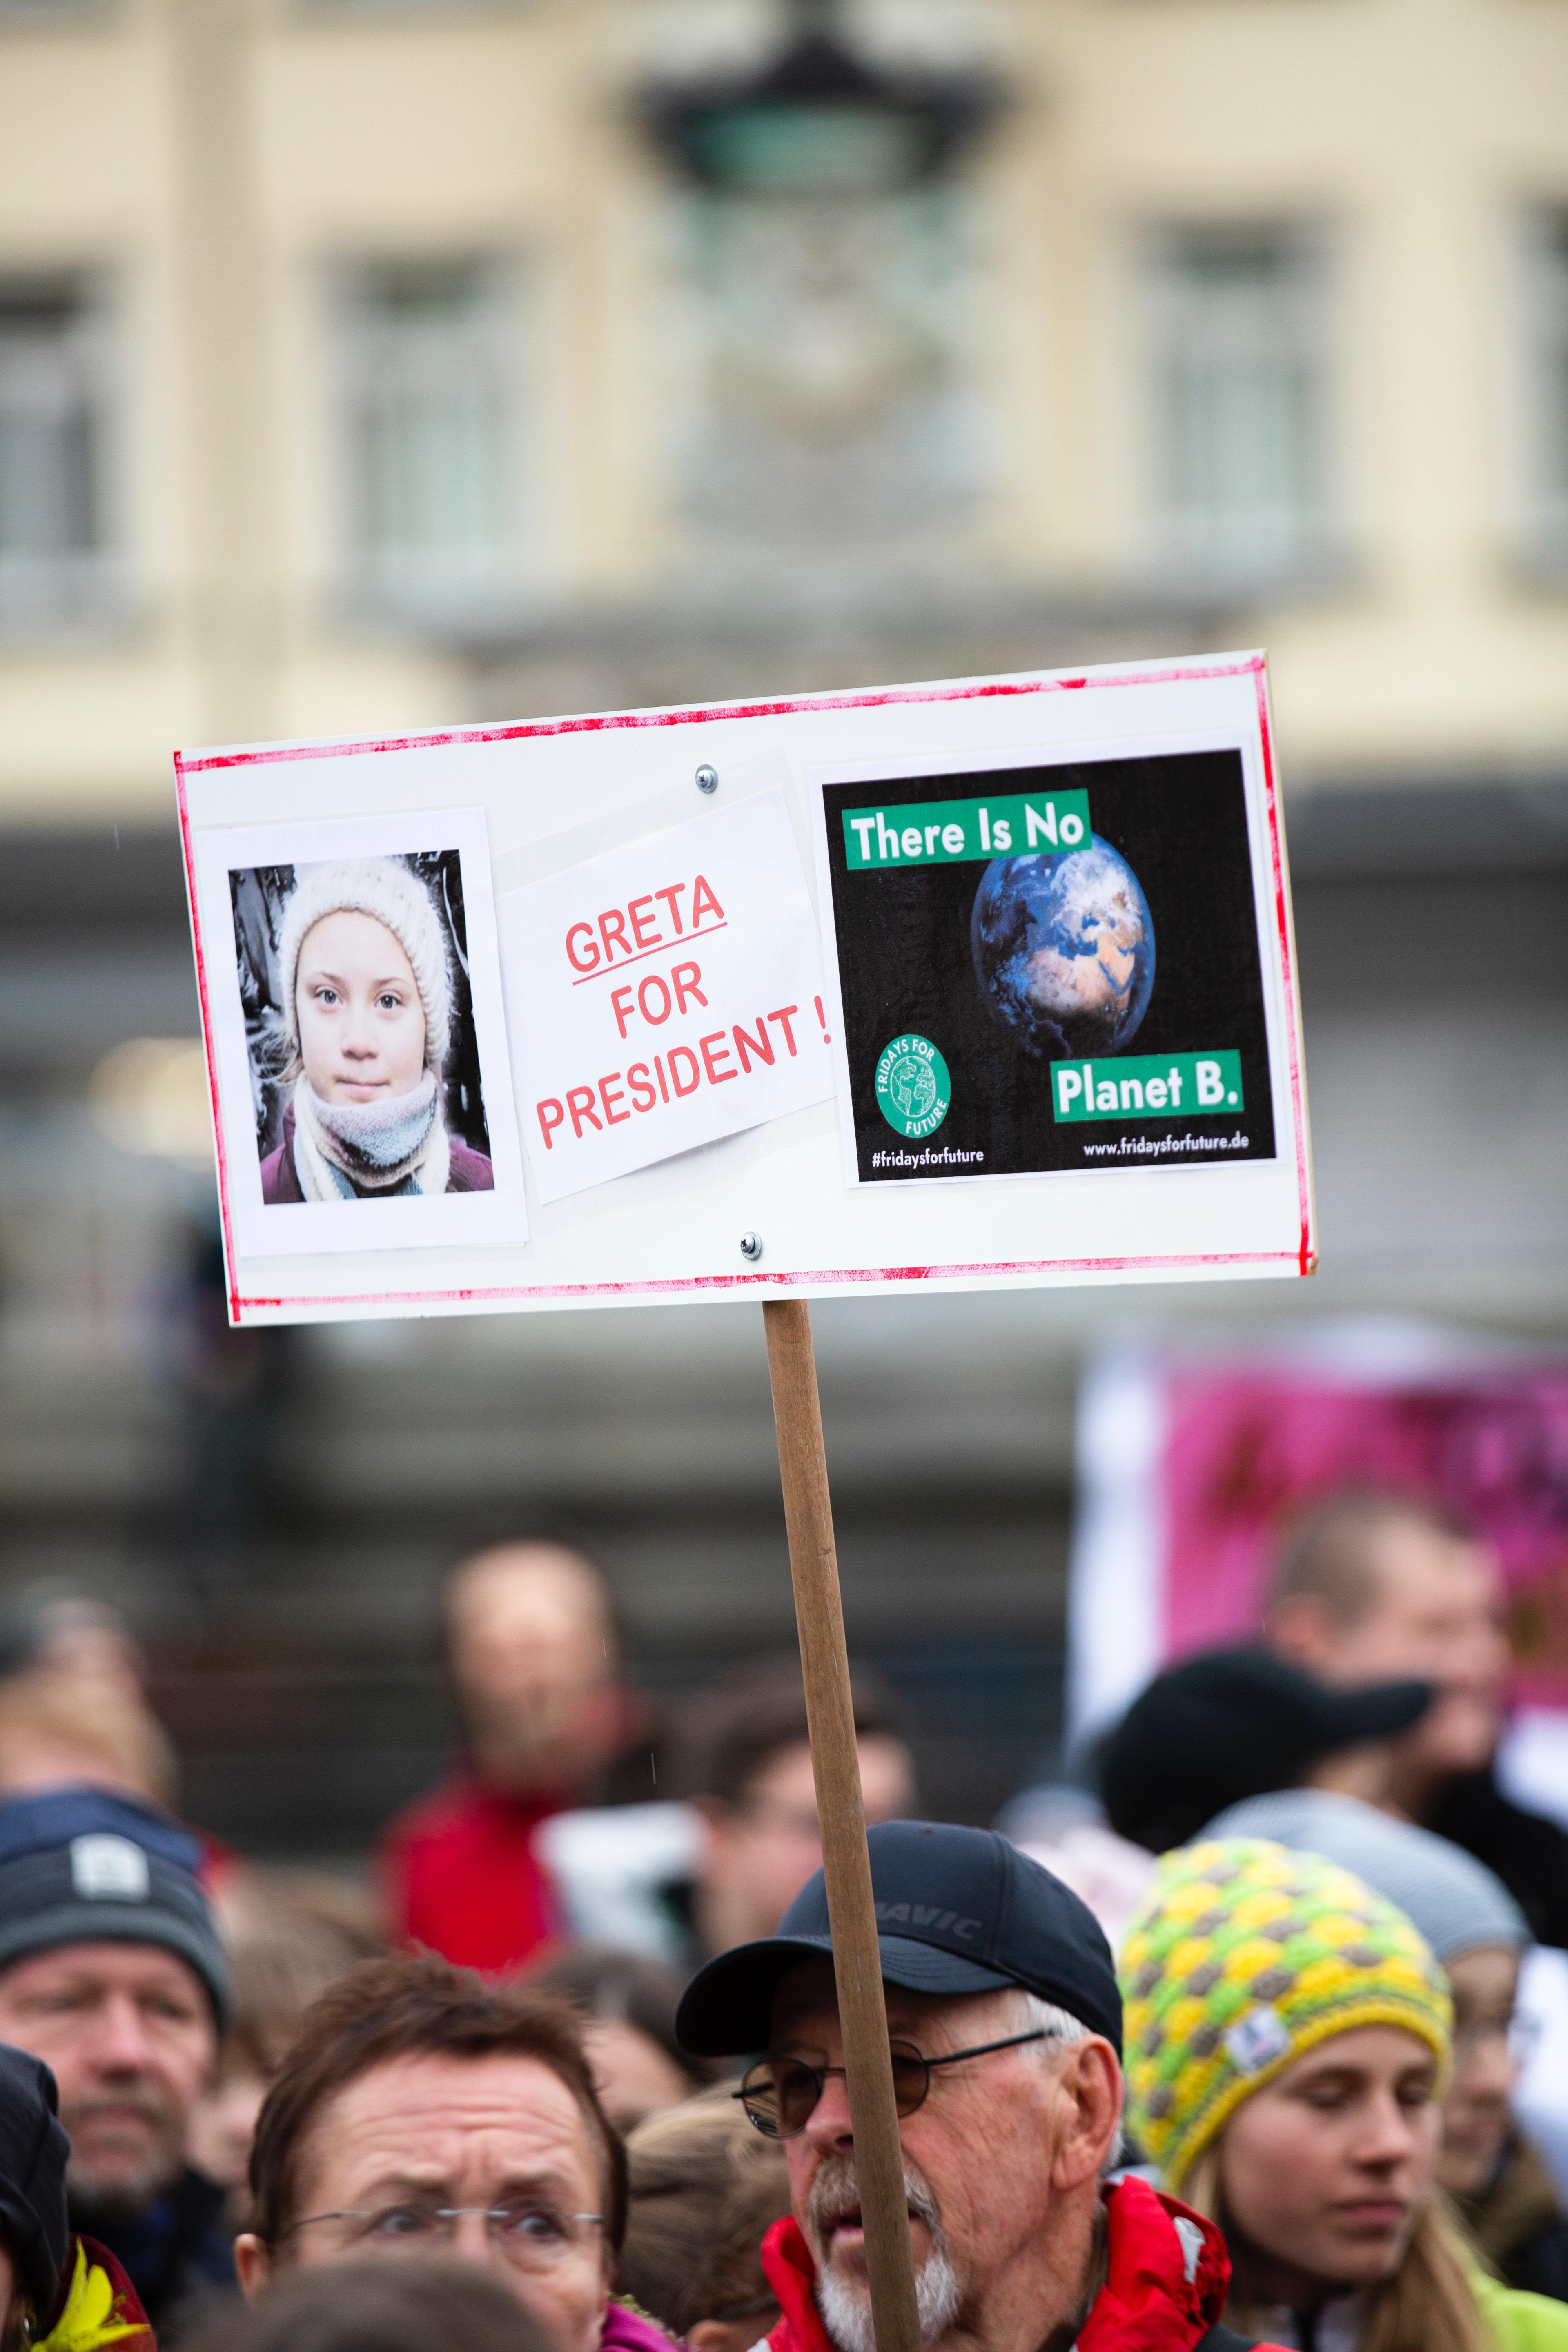 Un cartel de Greta Thunberg en una manifstación. Markus Spiske para Unsplash